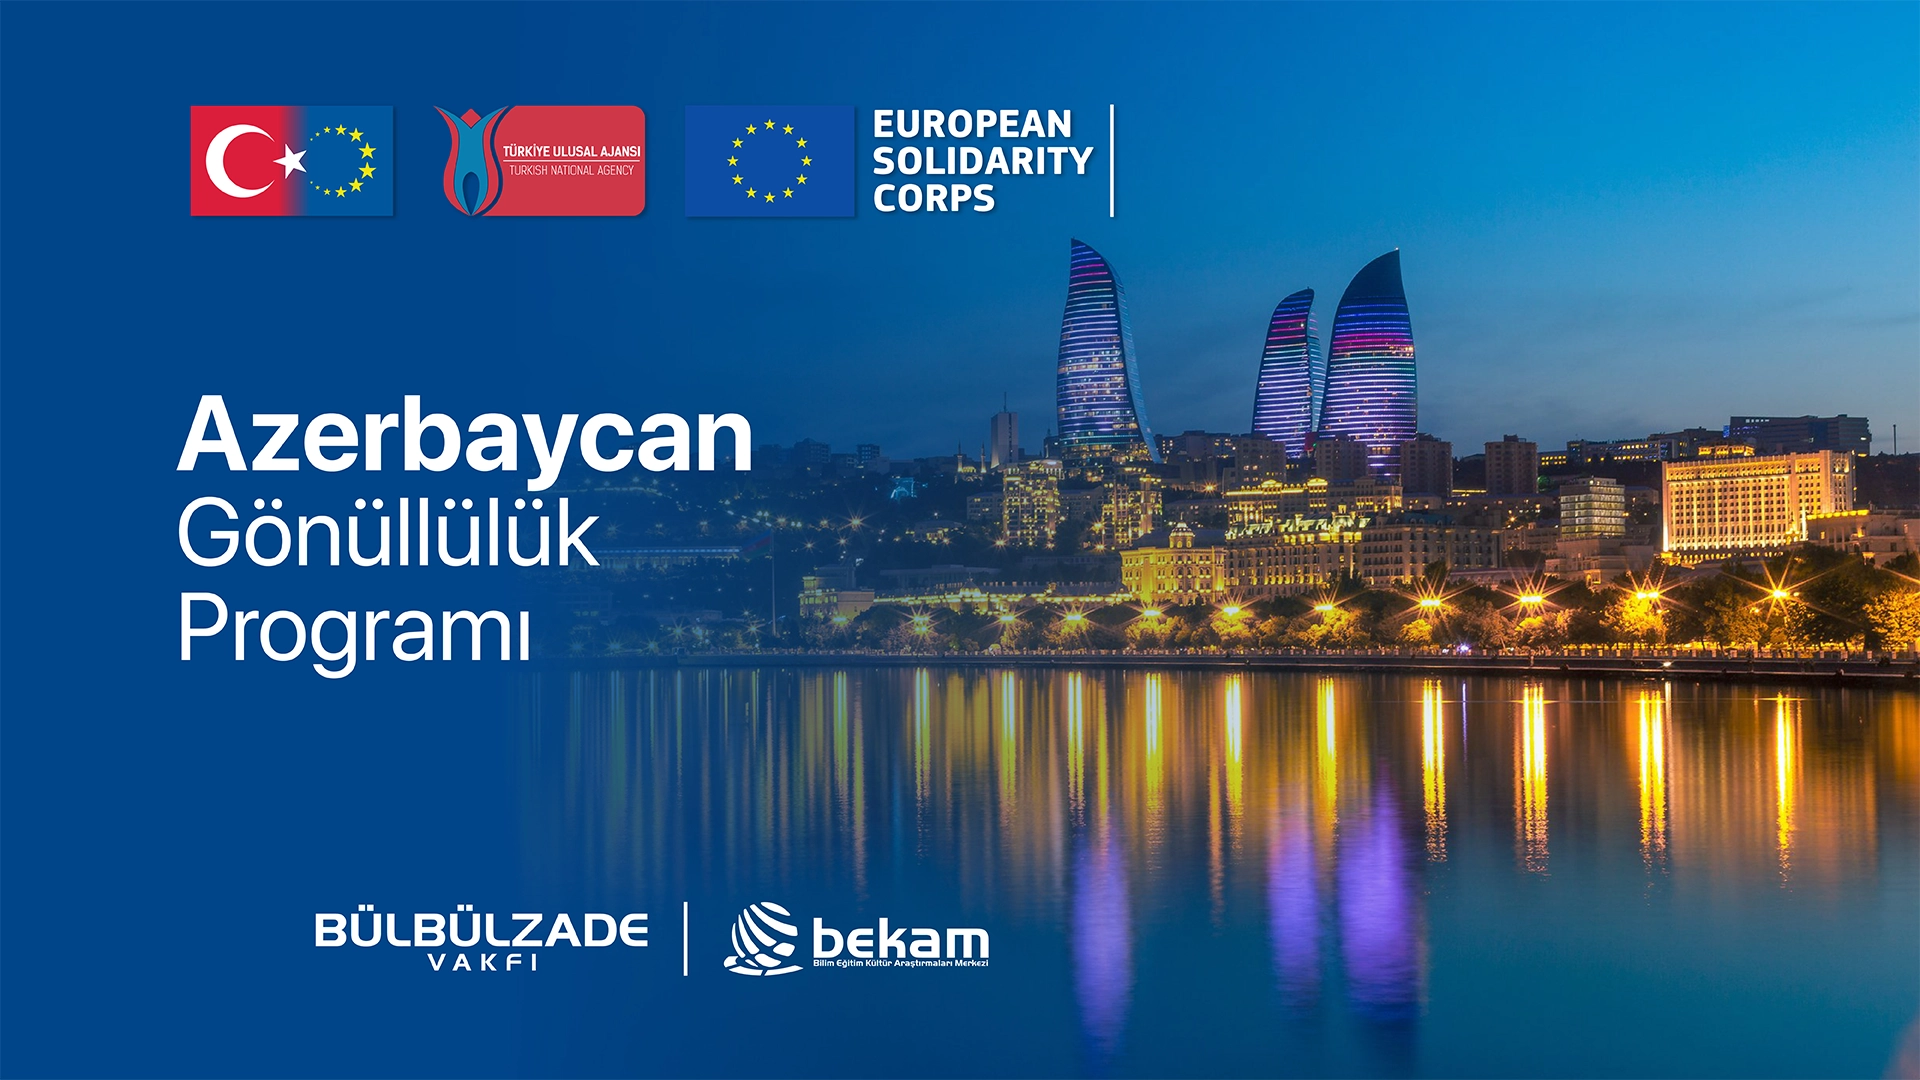 Become an ESC Volunteer in Azerbaijan!